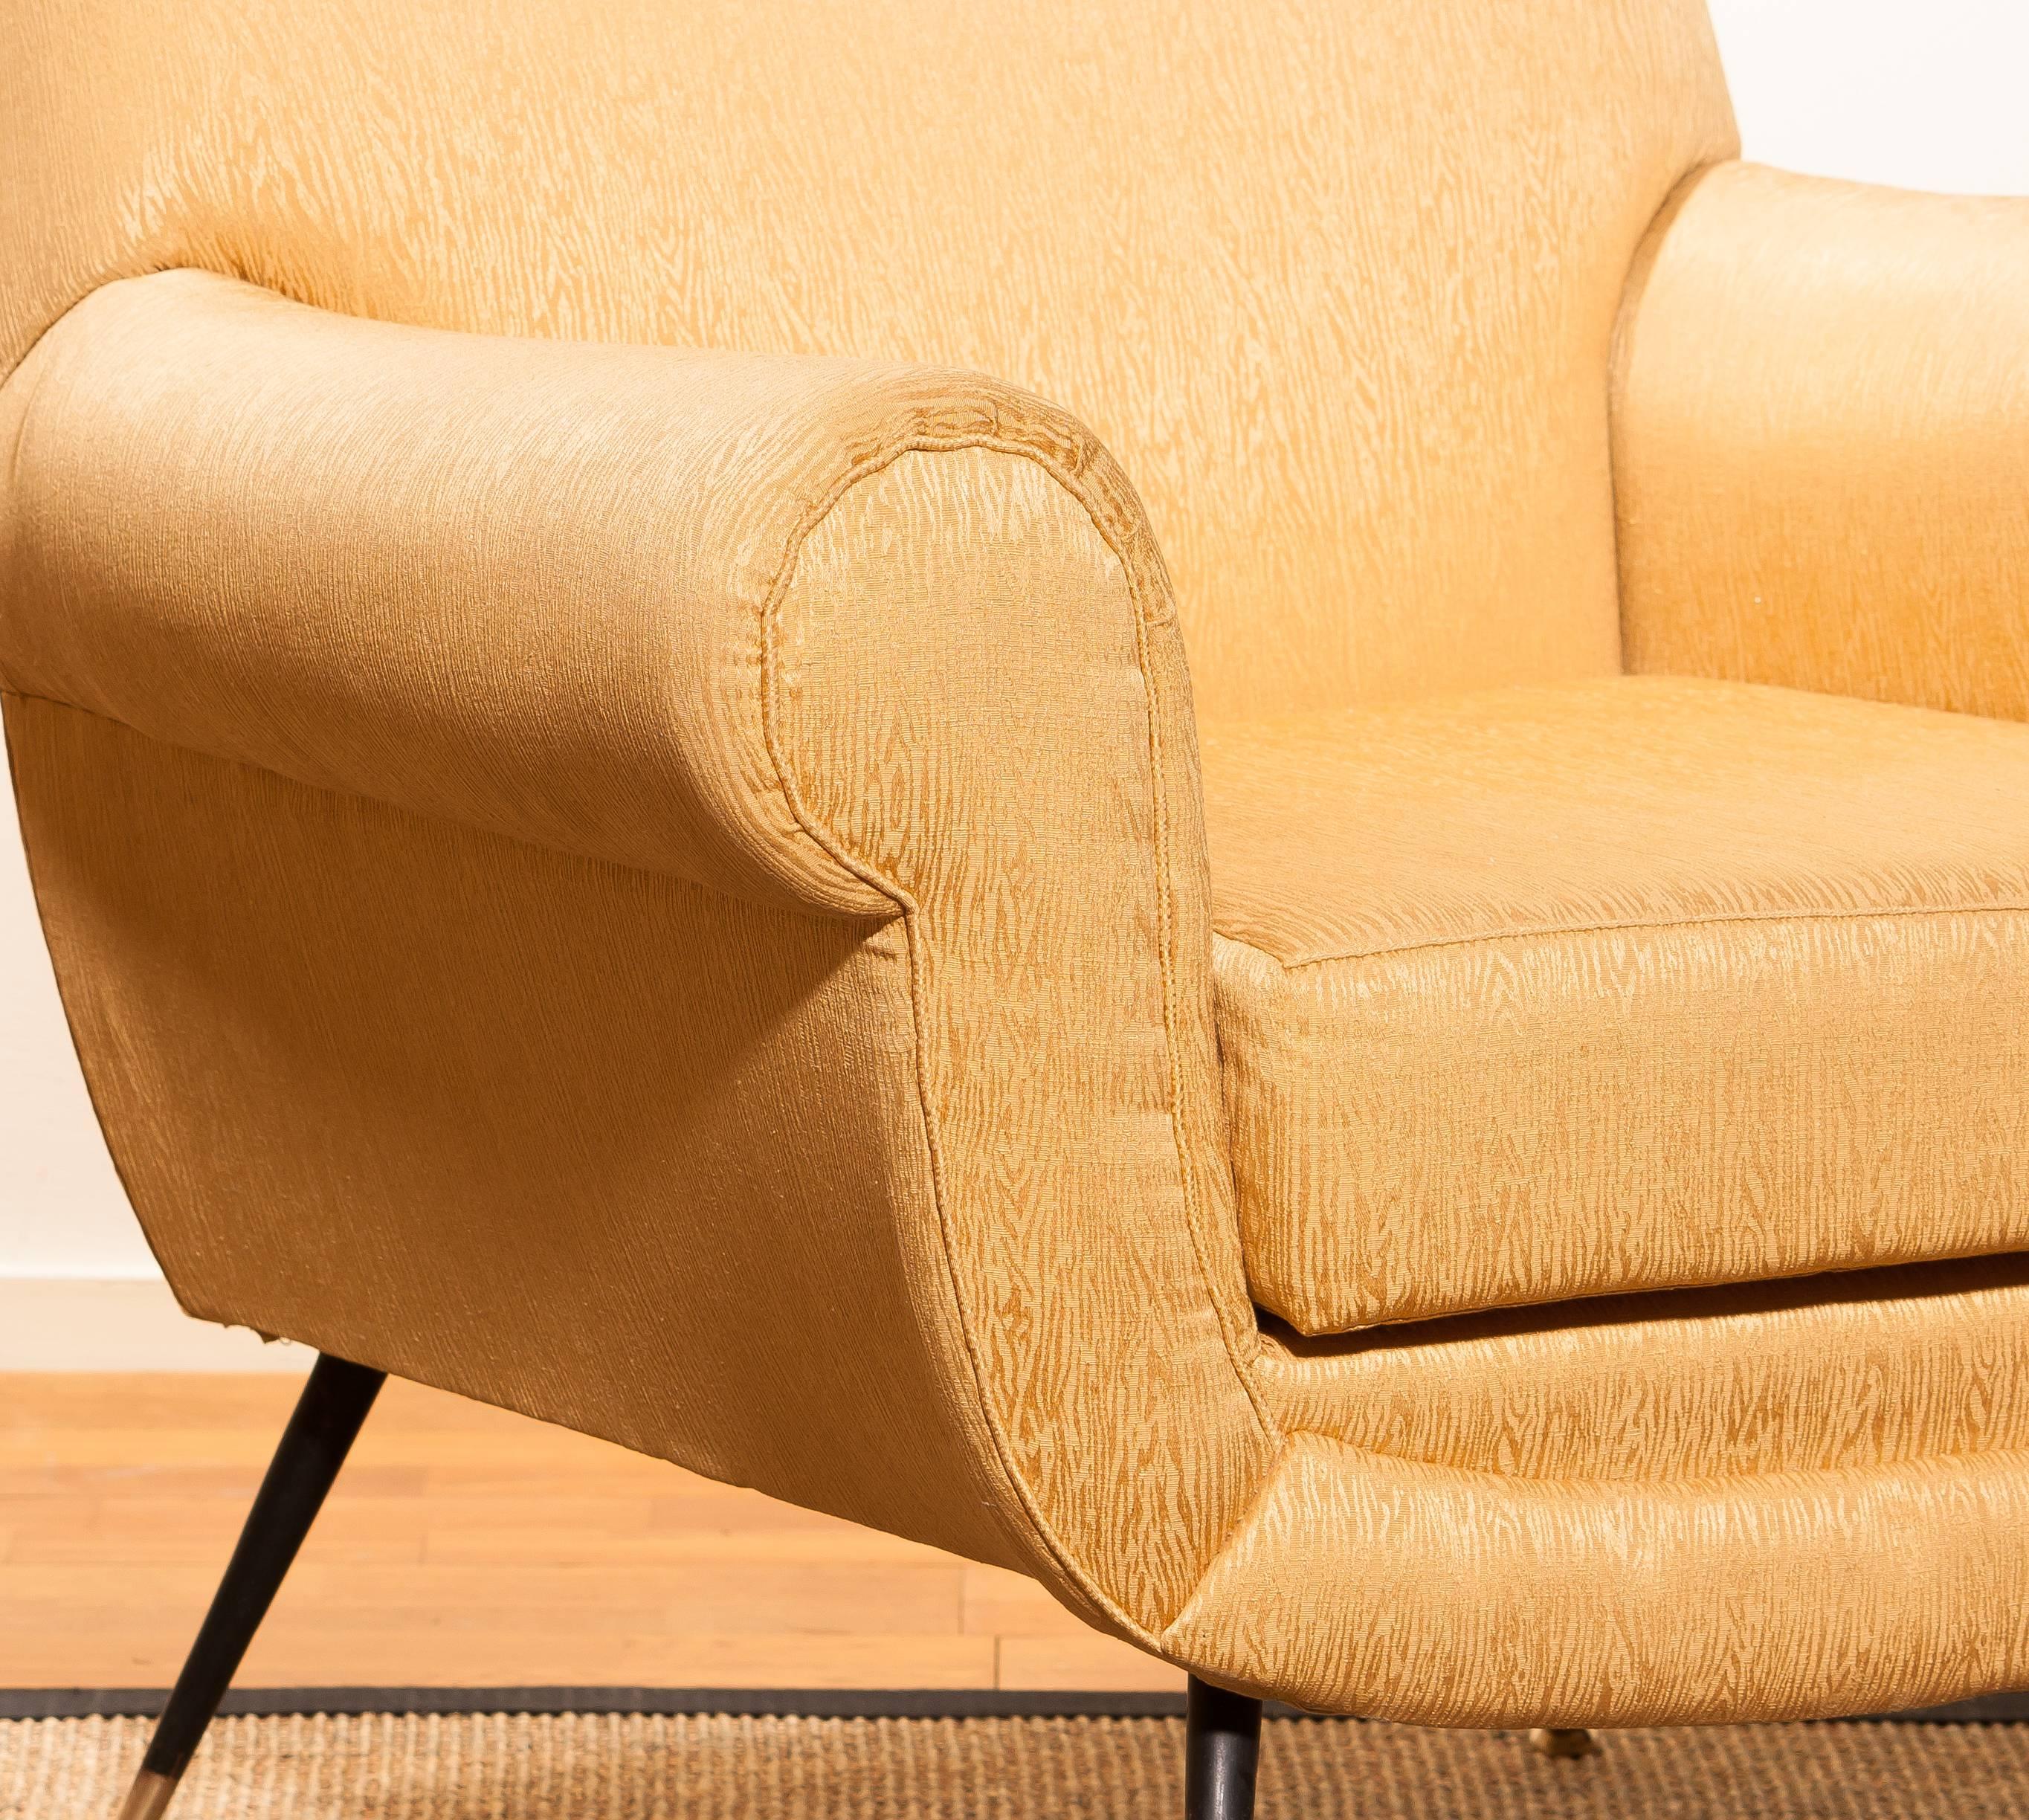 Golden Jacquard Upholstered Easy Chairs by Gigi Radice for Minotti, Brass Legs. 6